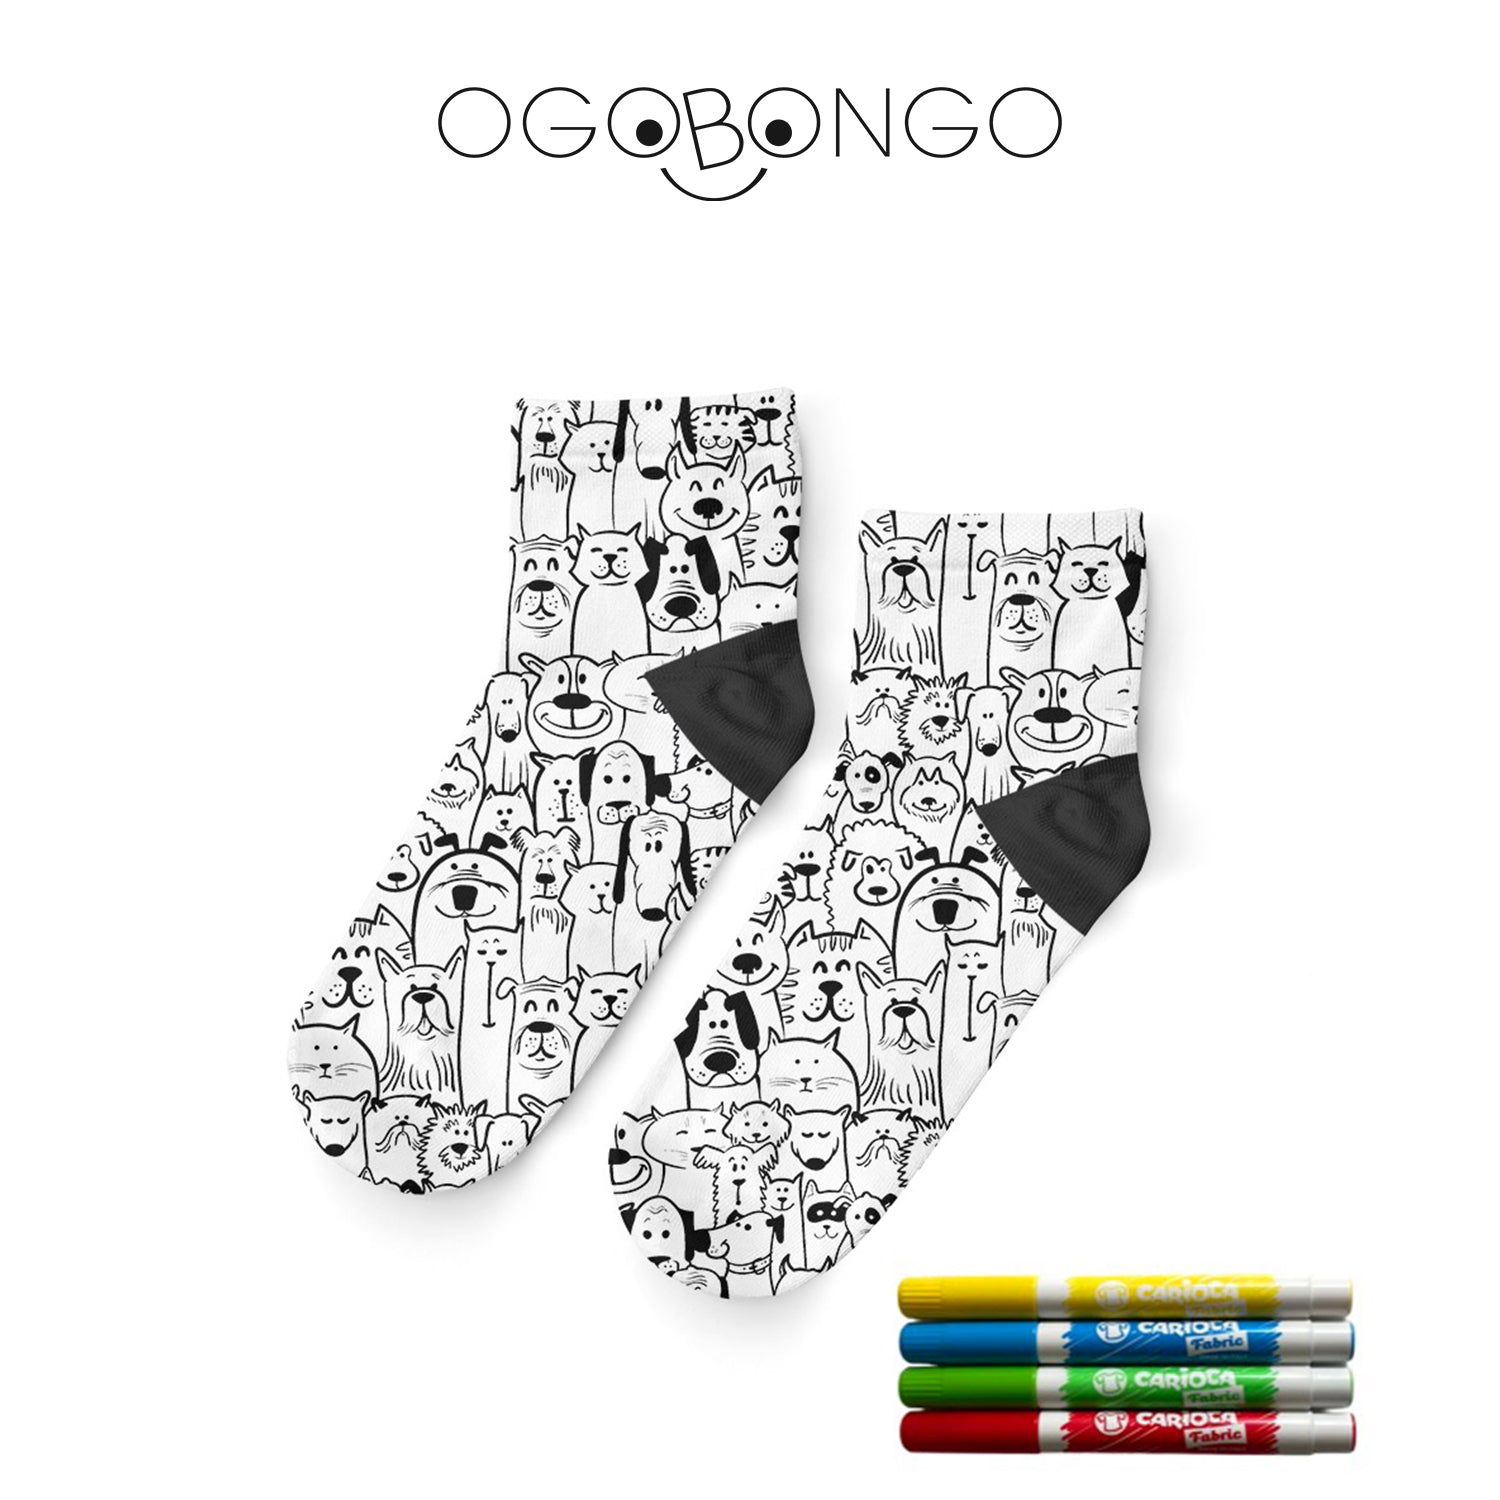 Ogobongo 75'li Boyama Çorap Standı